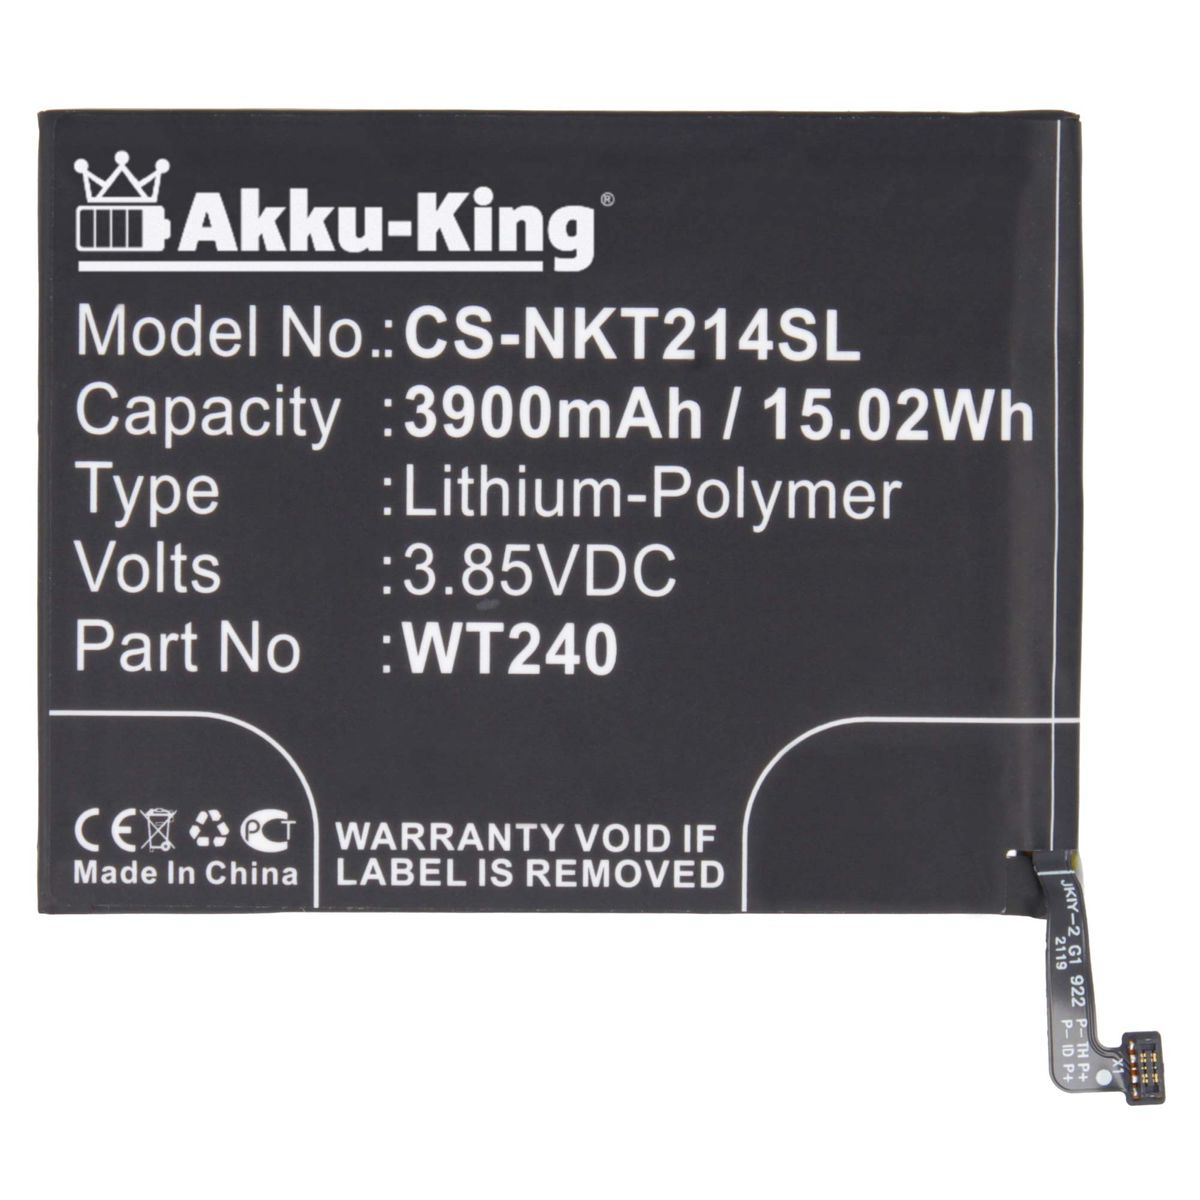 AKKU-KING Akku kompatibel mit 3900mAh Handy-Akku, 3.85 Nokia Volt, WT240 Li-Polymer